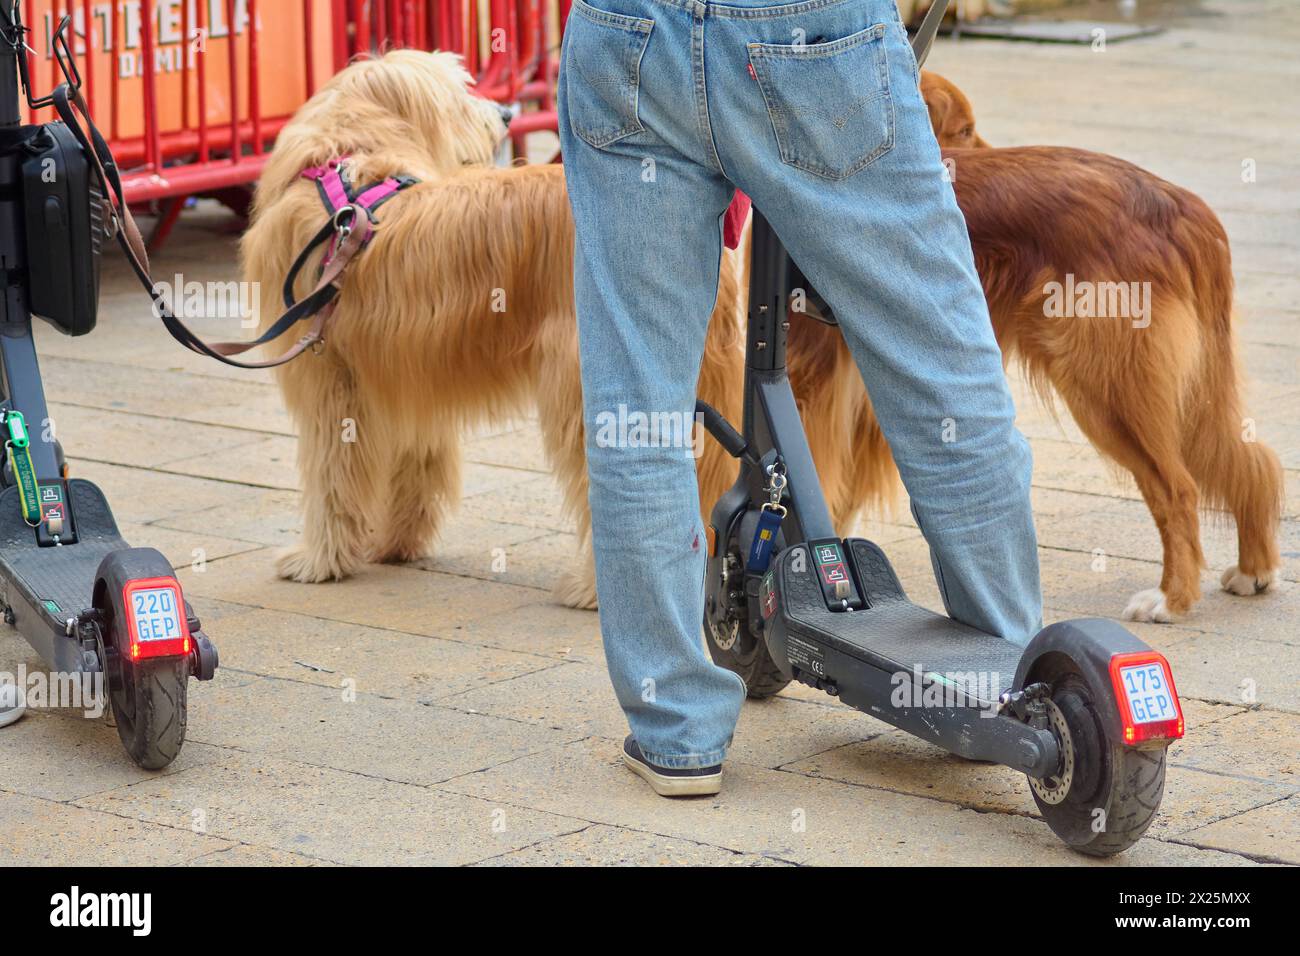 Tarragona, Spanien - 20. April 2024: Eine Person in Jeans steht neben zwei angeleinten Hunden und einem Elektroroller, die eine moderne urbane Szene des Spazierens darstellen Stockfoto